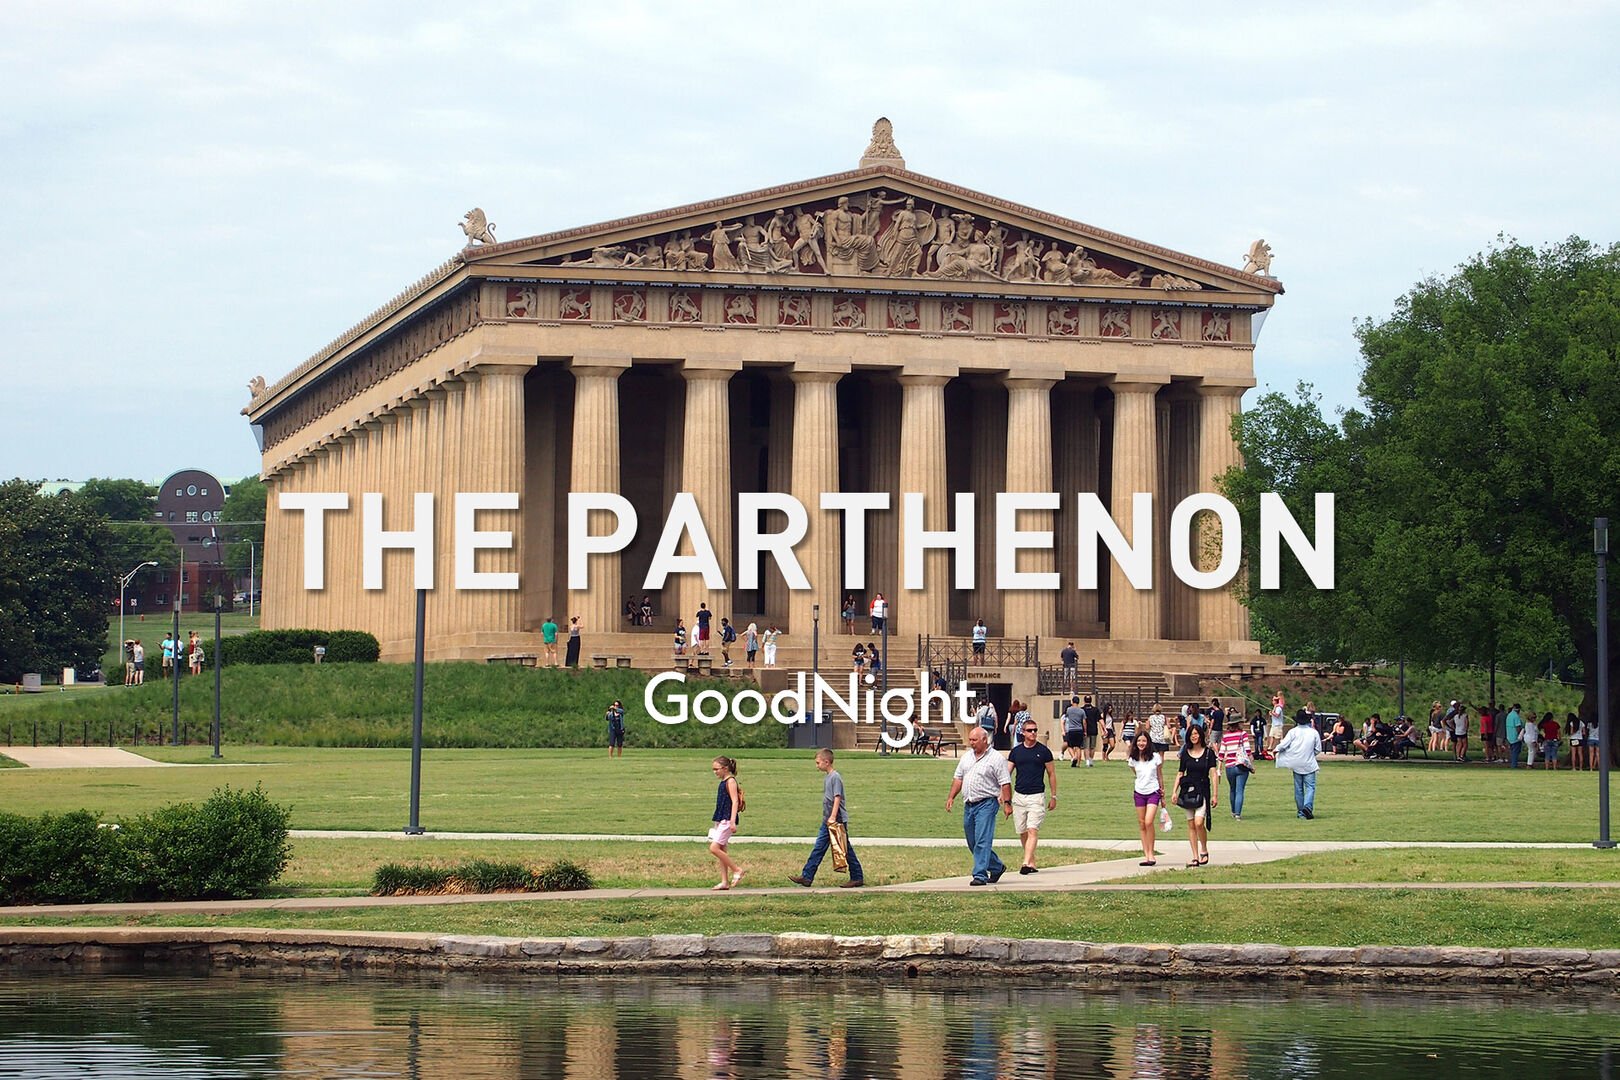 9 mins: The Parthenon